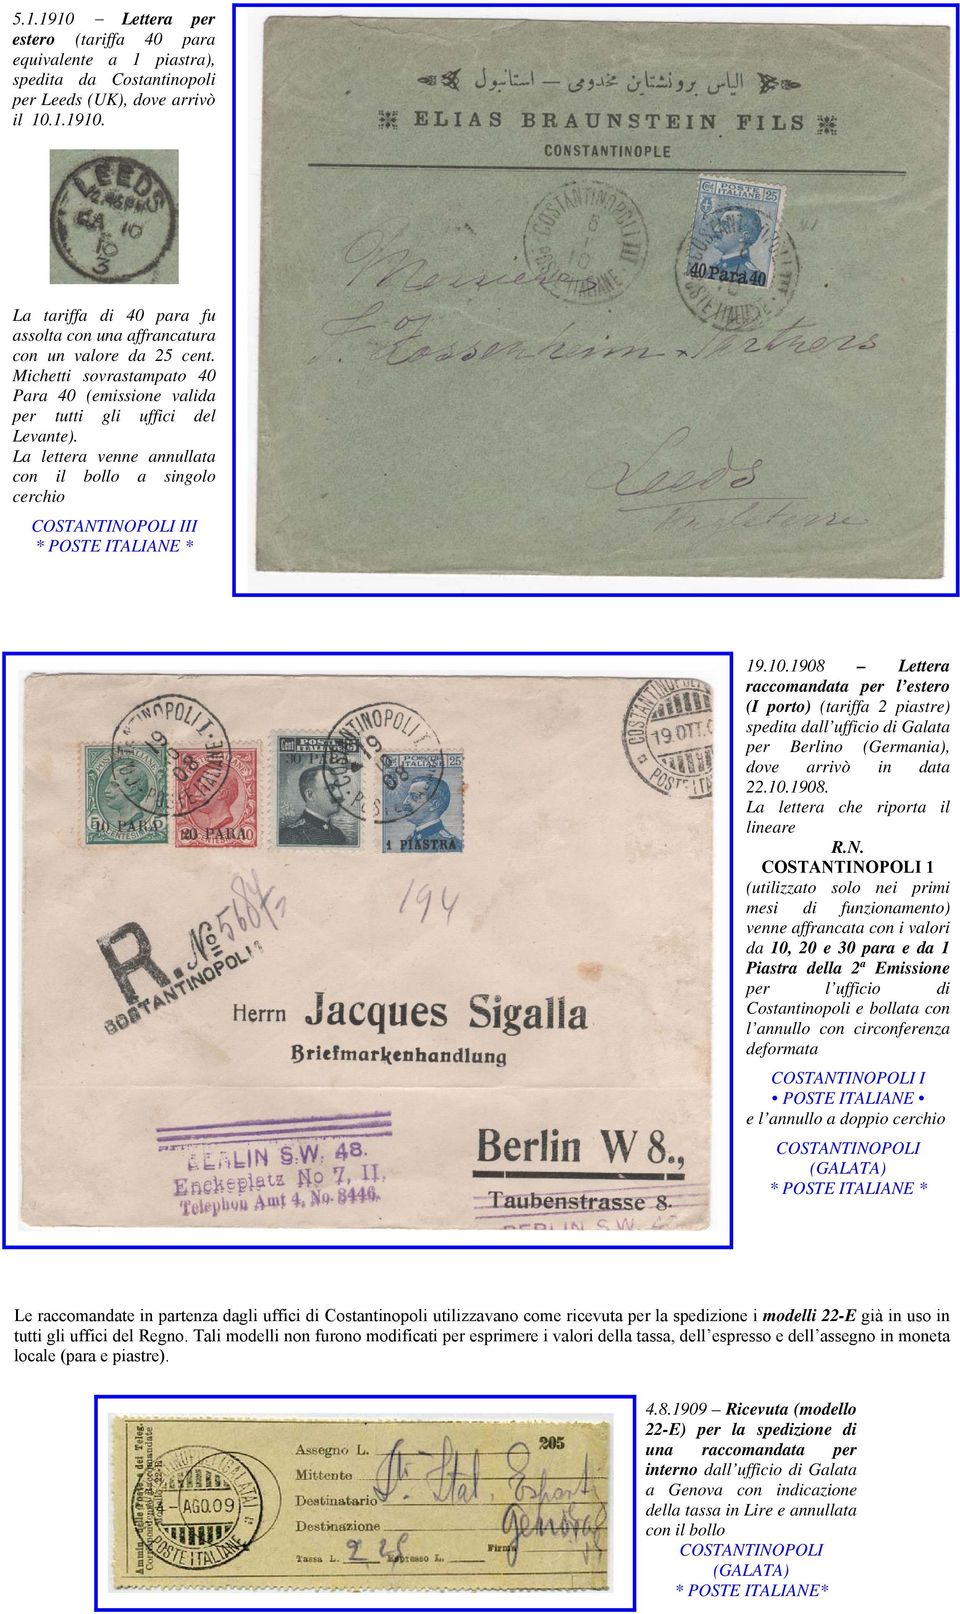 1908 Lettera raccomandata per l estero (I porto) (tariffa 2 piastre) spedita dall ufficio di Galata per Berlino (Germania), dove arrivò in data 22.10.1908. La lettera che riporta il lineare R.N.